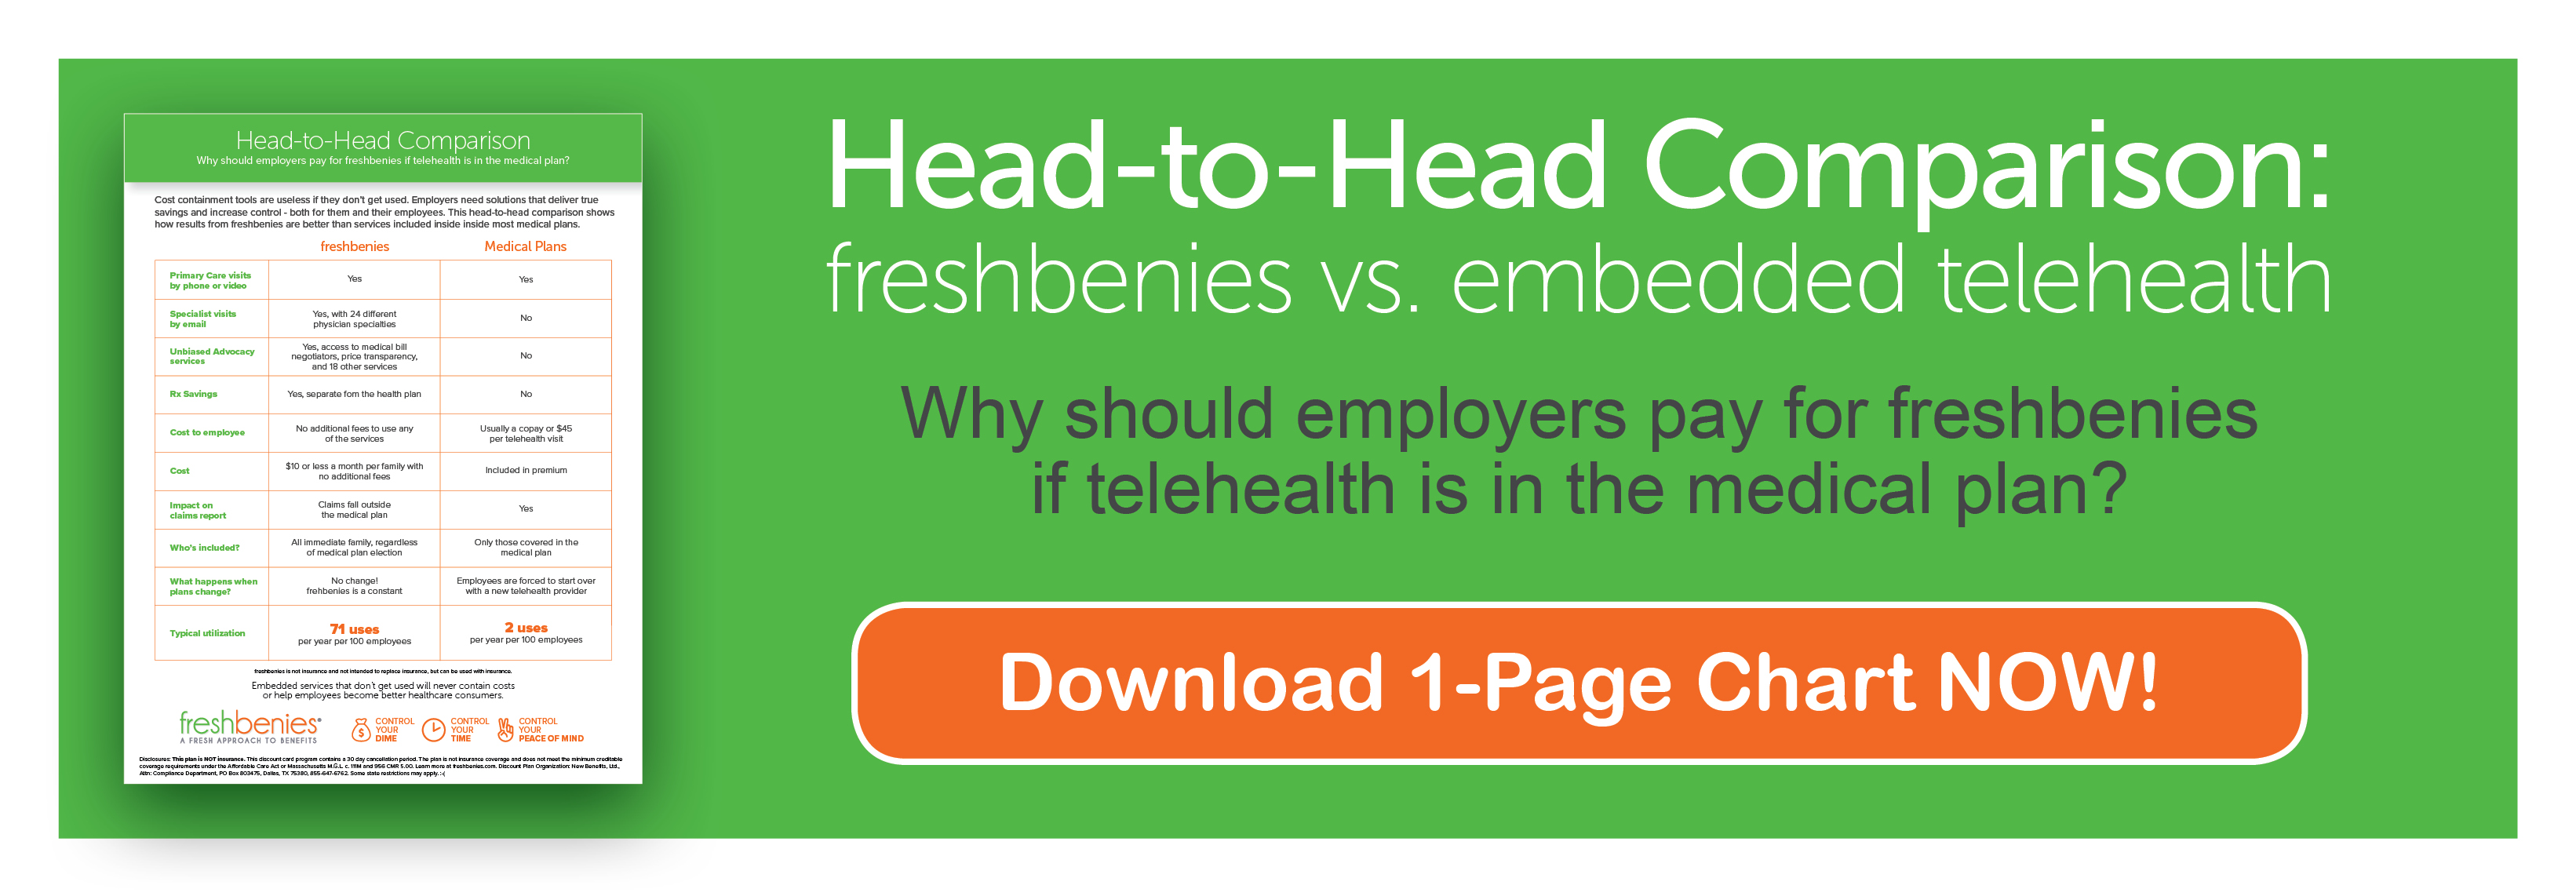 freshbenies vs embedded telehealth